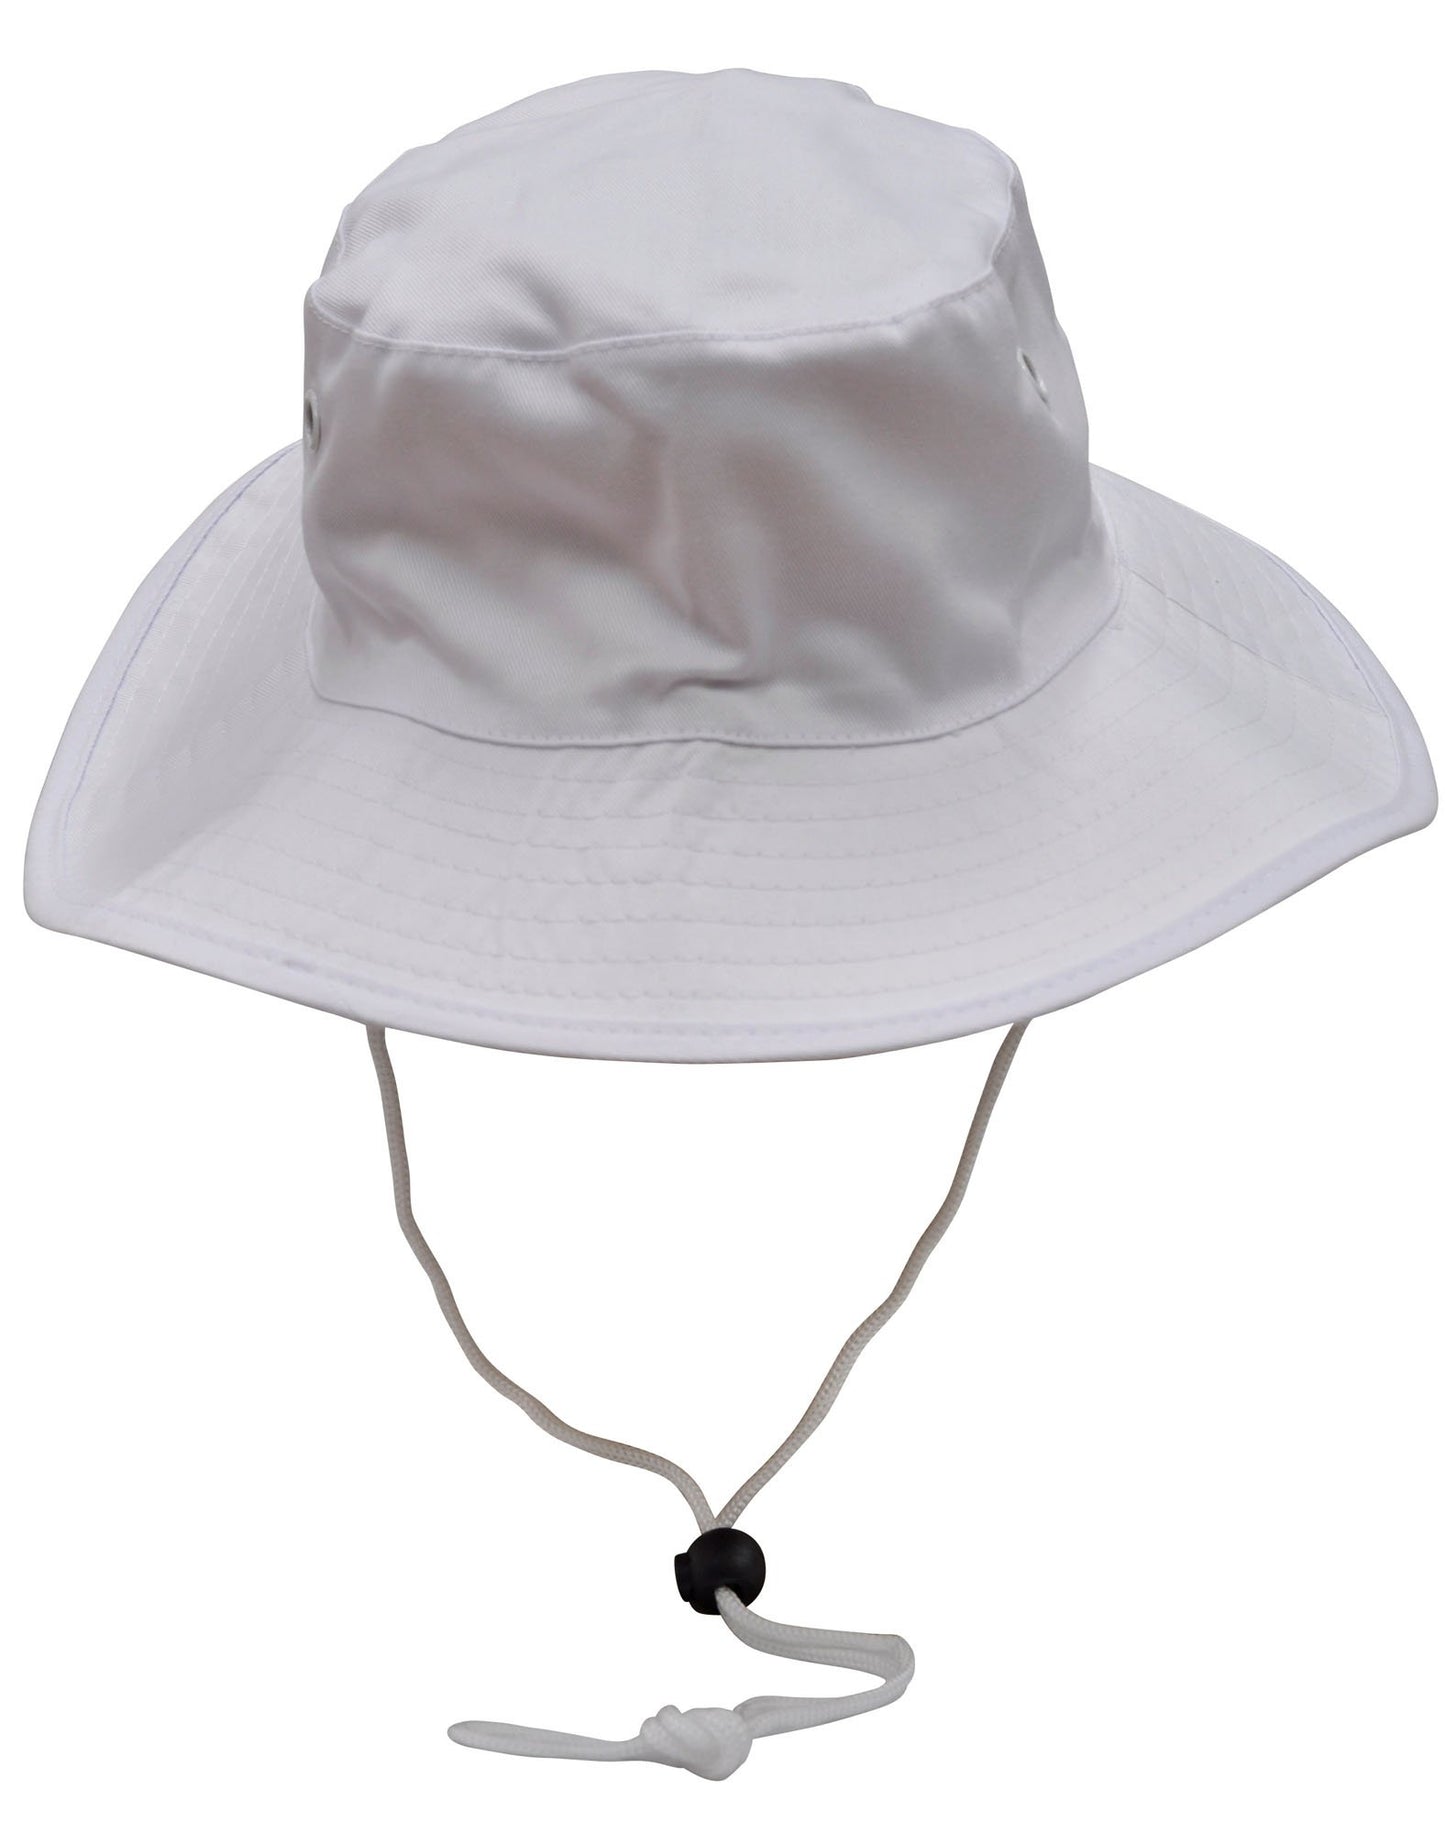 H1035 Surf Hat With Break-away Strap - Star Uniforms Australia